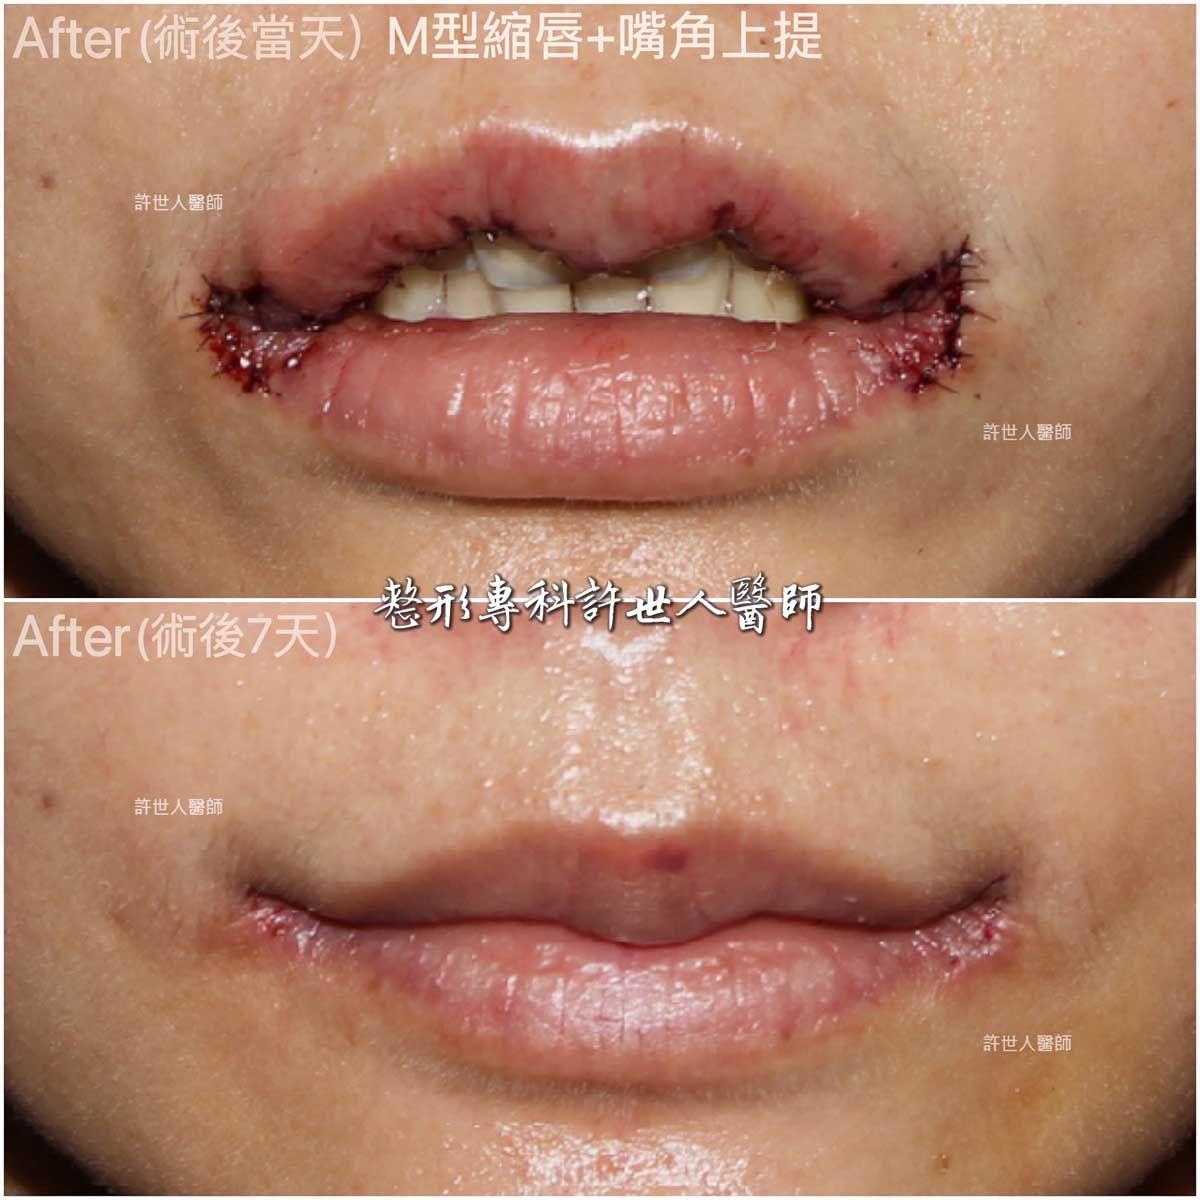 嘴角上提+-M型縮上唇治療嘴角下垂